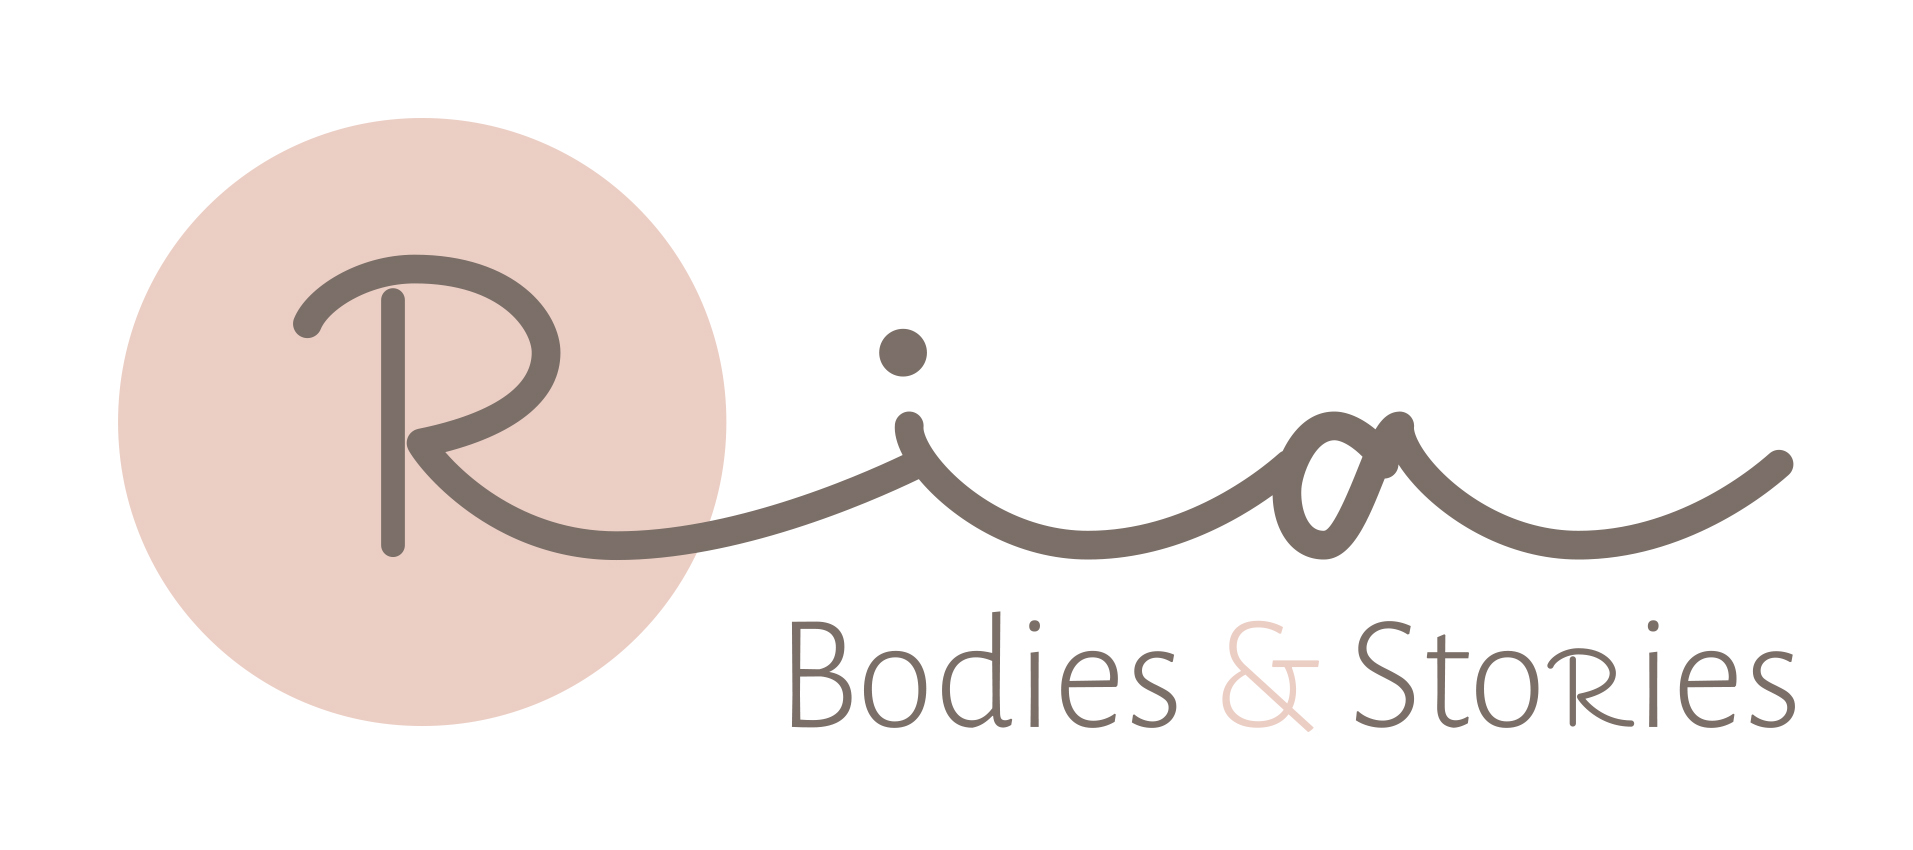 Ria - Bodies & Stories logo